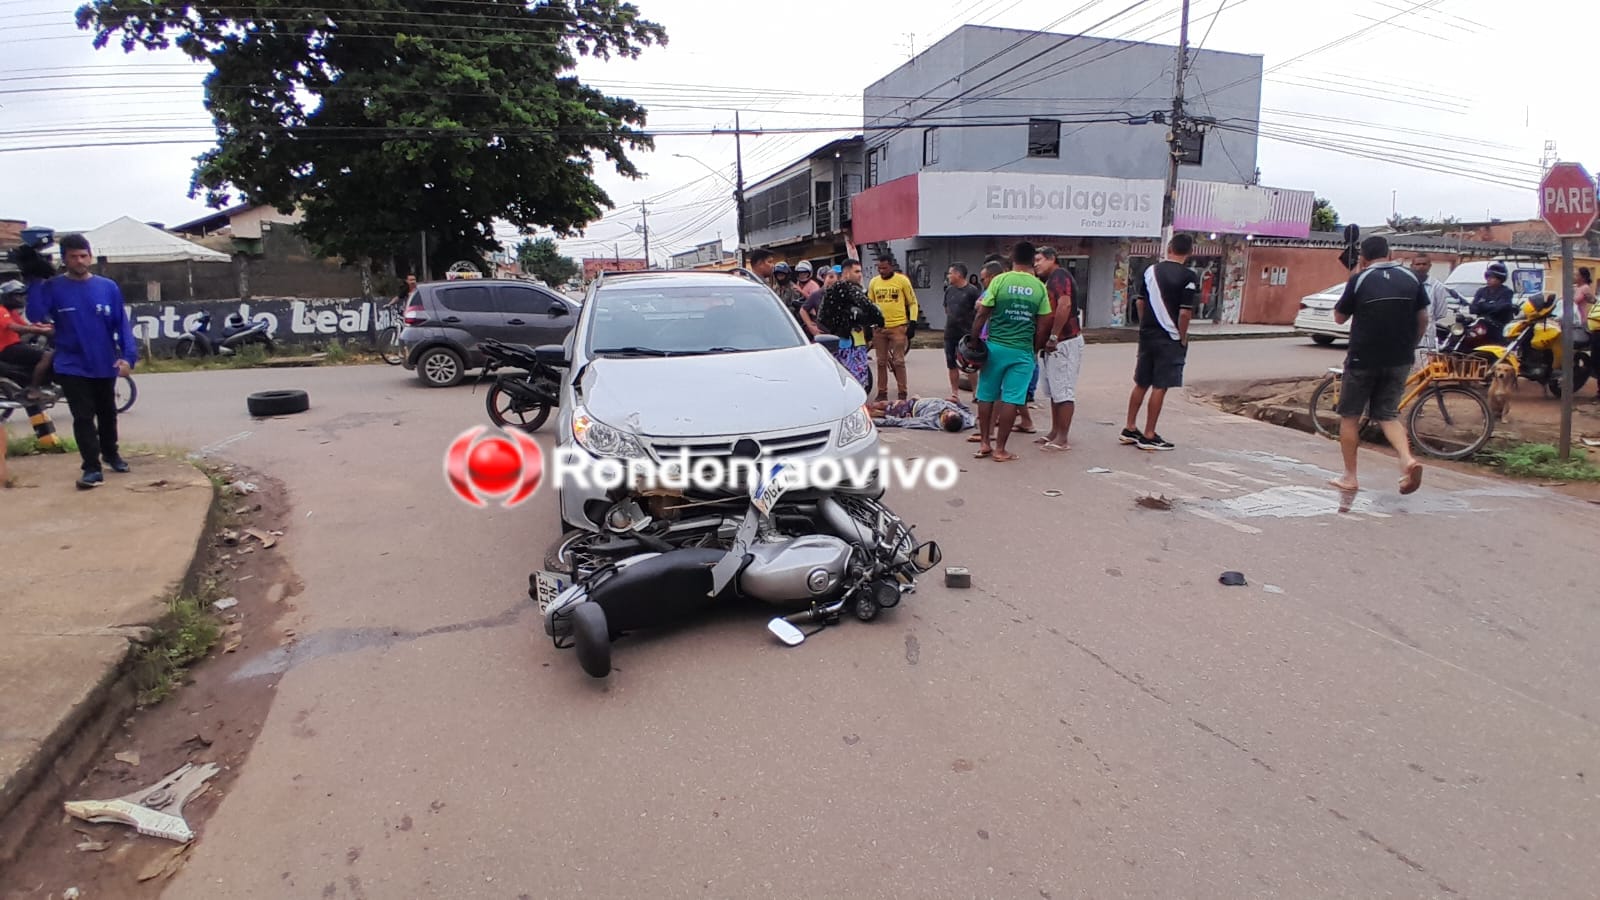 FRATURA EXPOSTA: Criança e motociclista são arrastados por carro na zona Sul